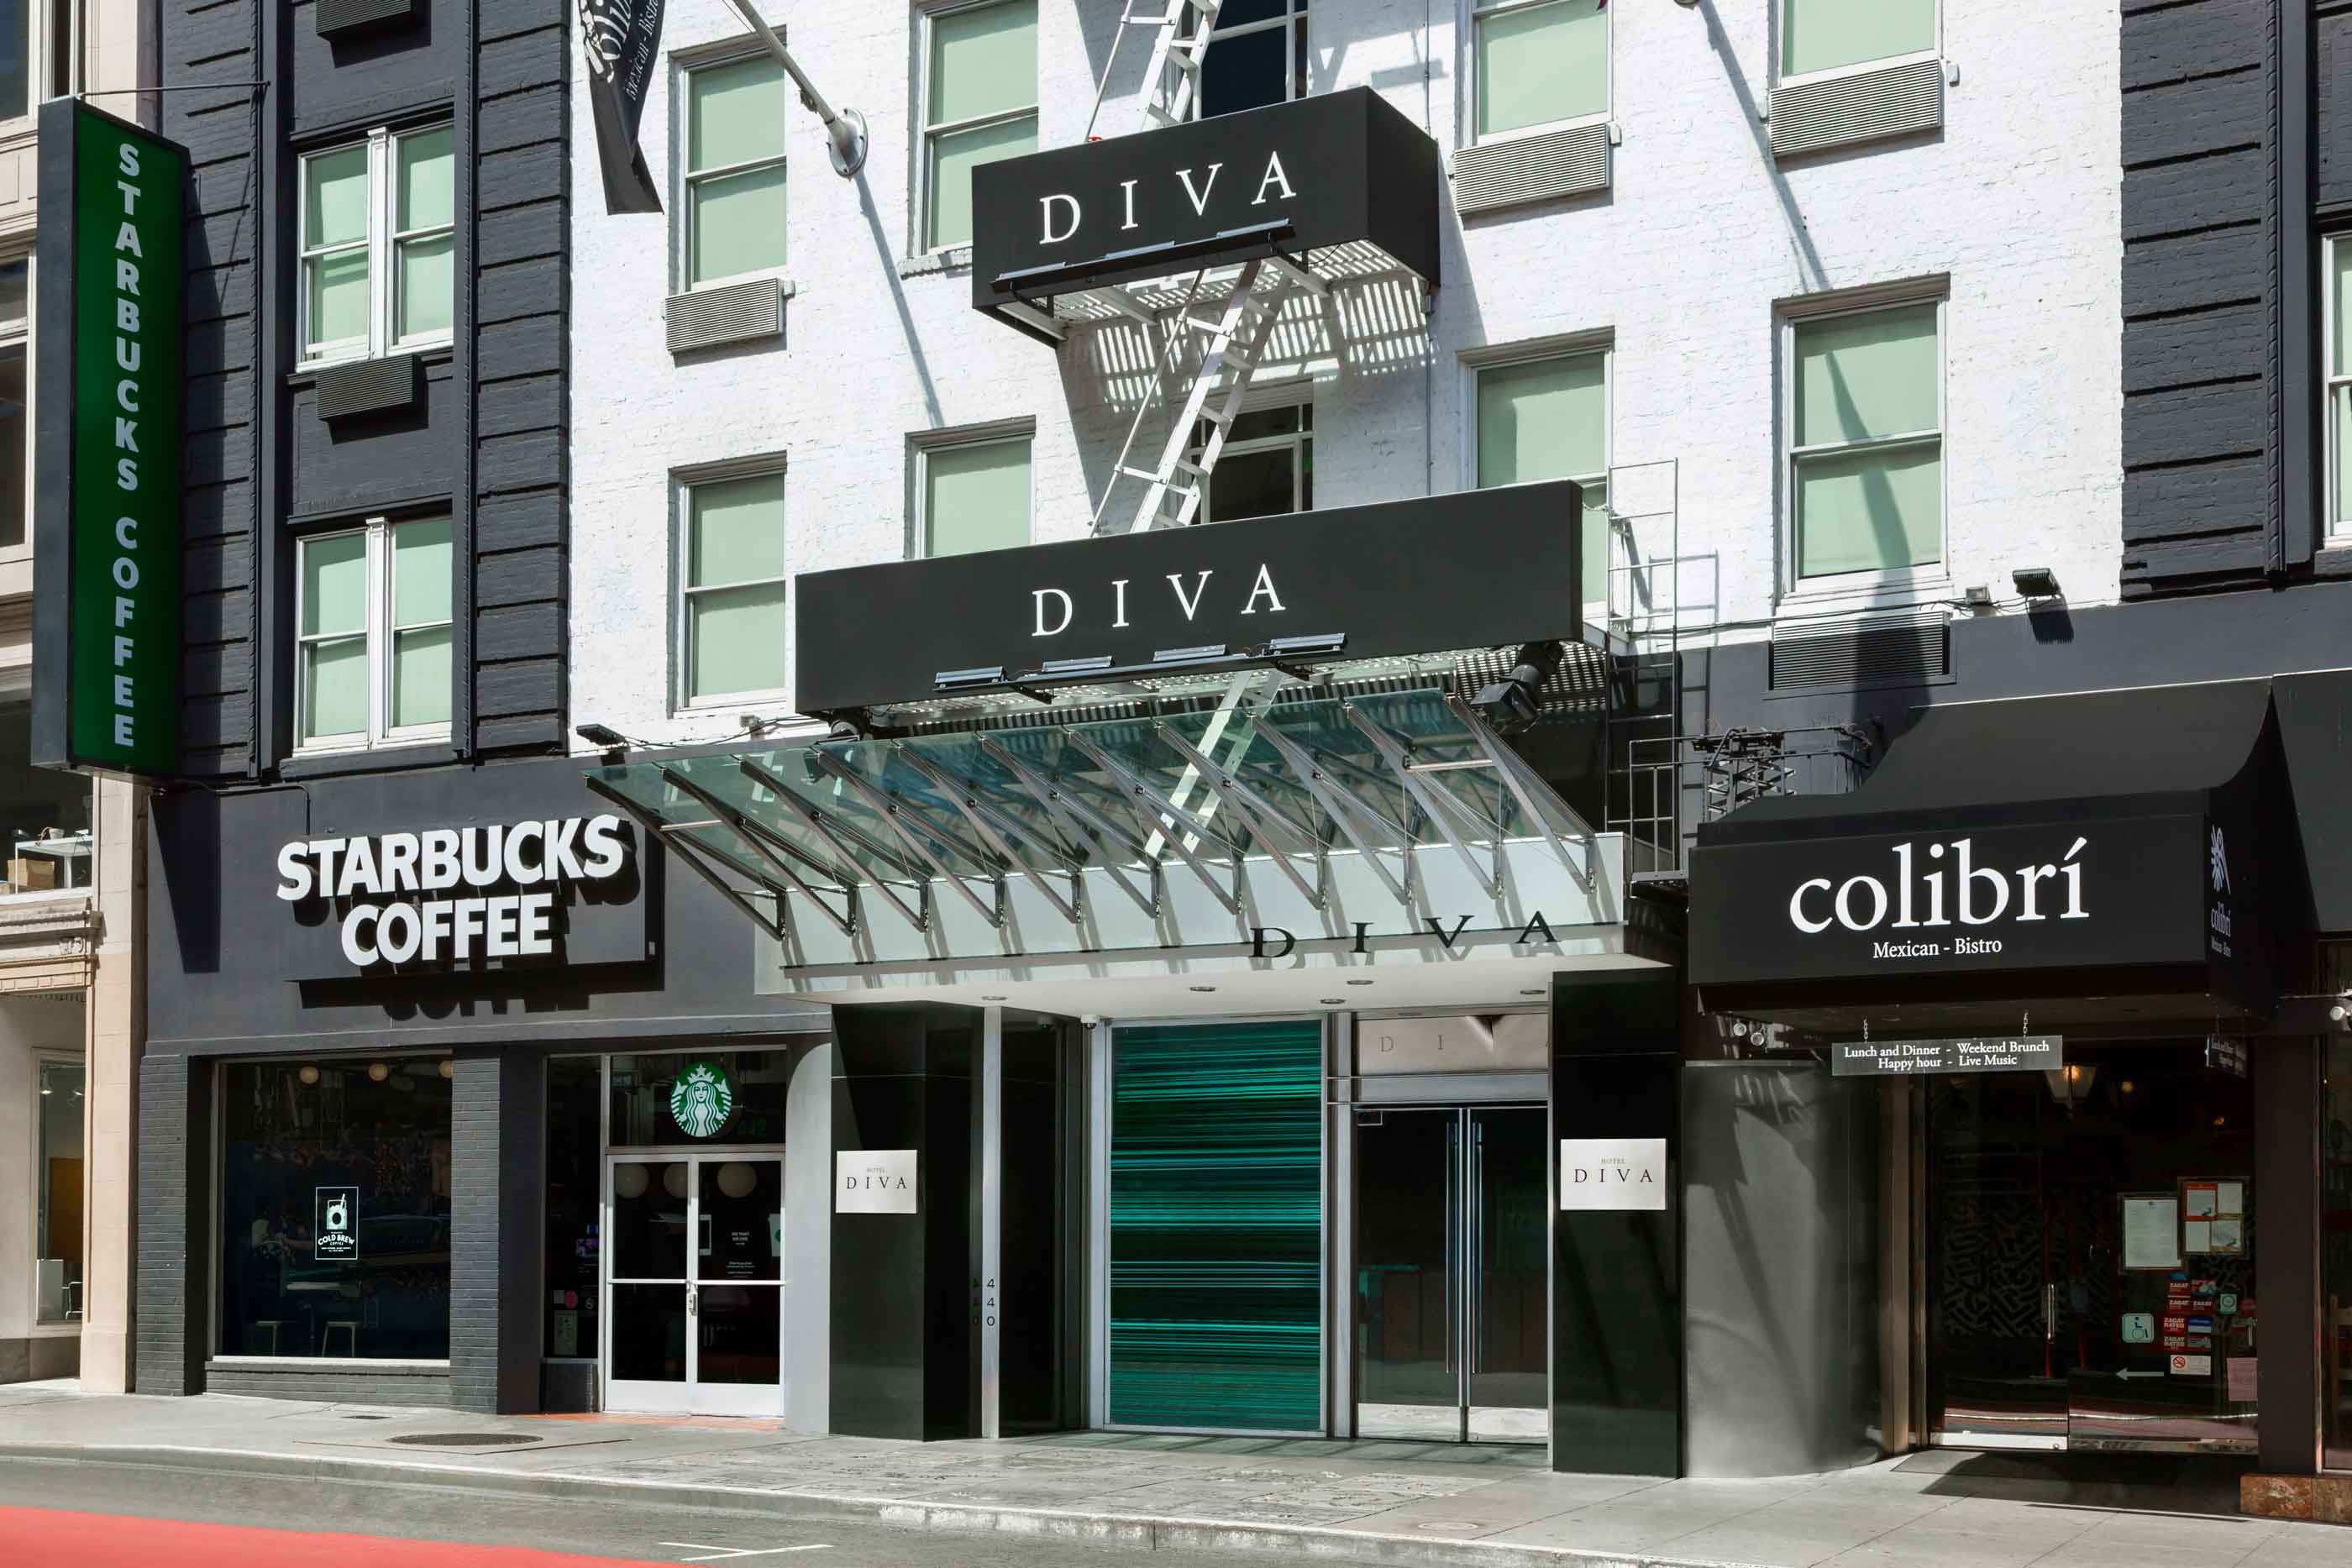 Hotel Diva in San Francisco Hotels in San Francisco.